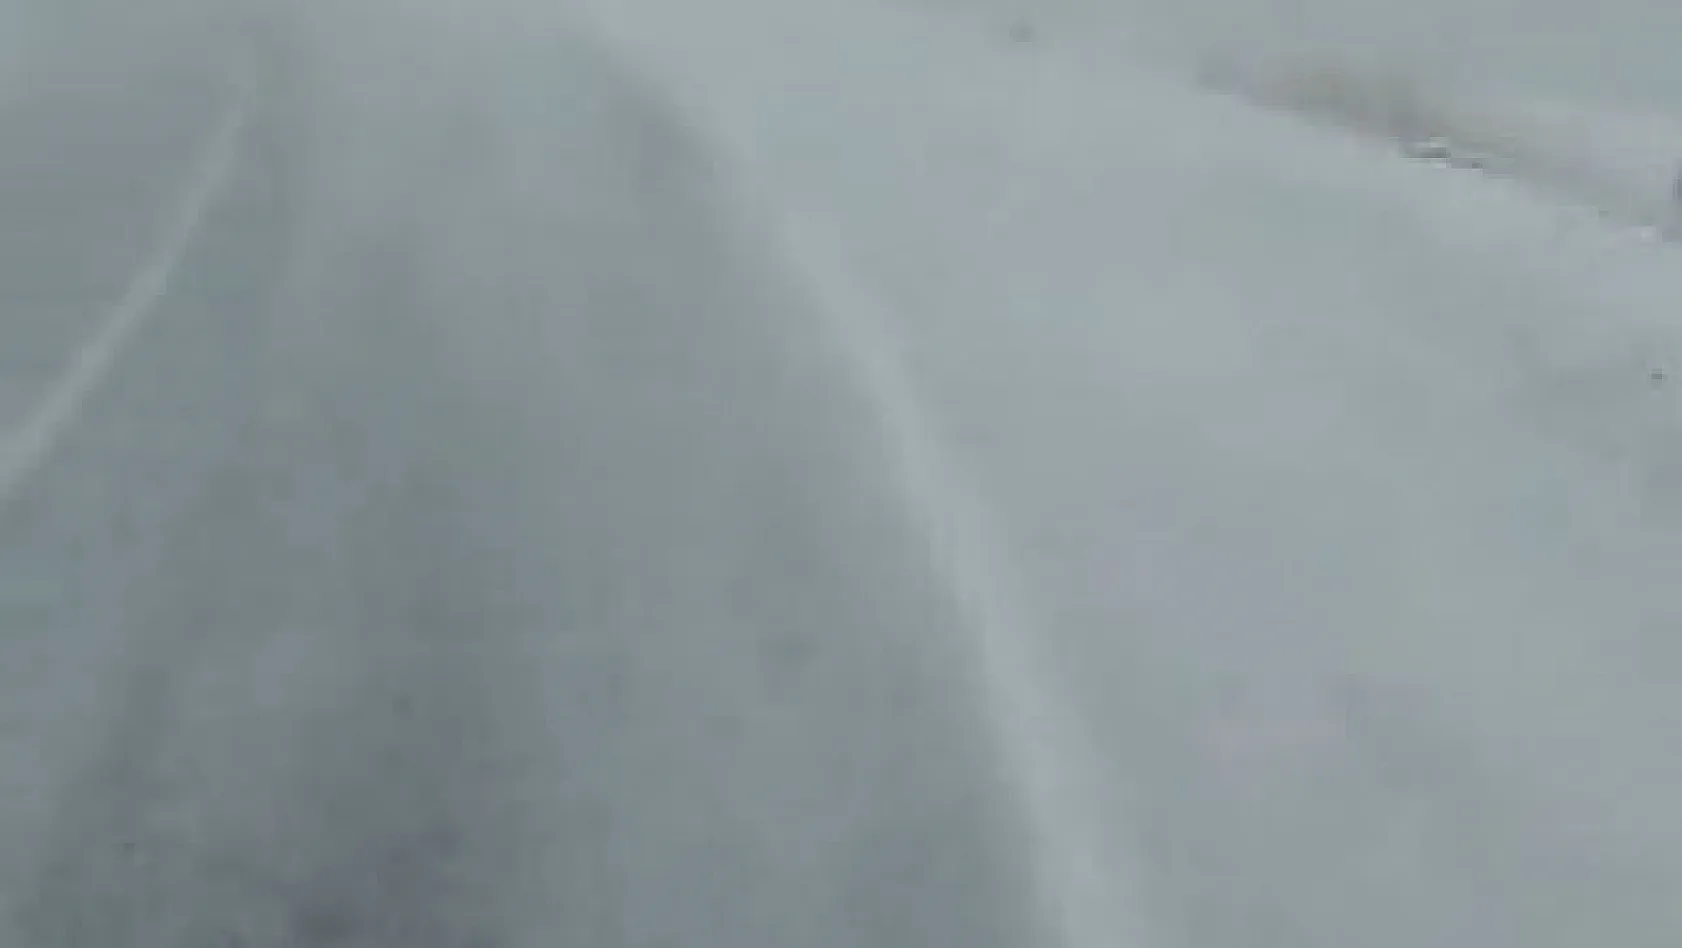 Tunceli'nin ilçe yollarında kar yağışı başladı, valilik uyardı